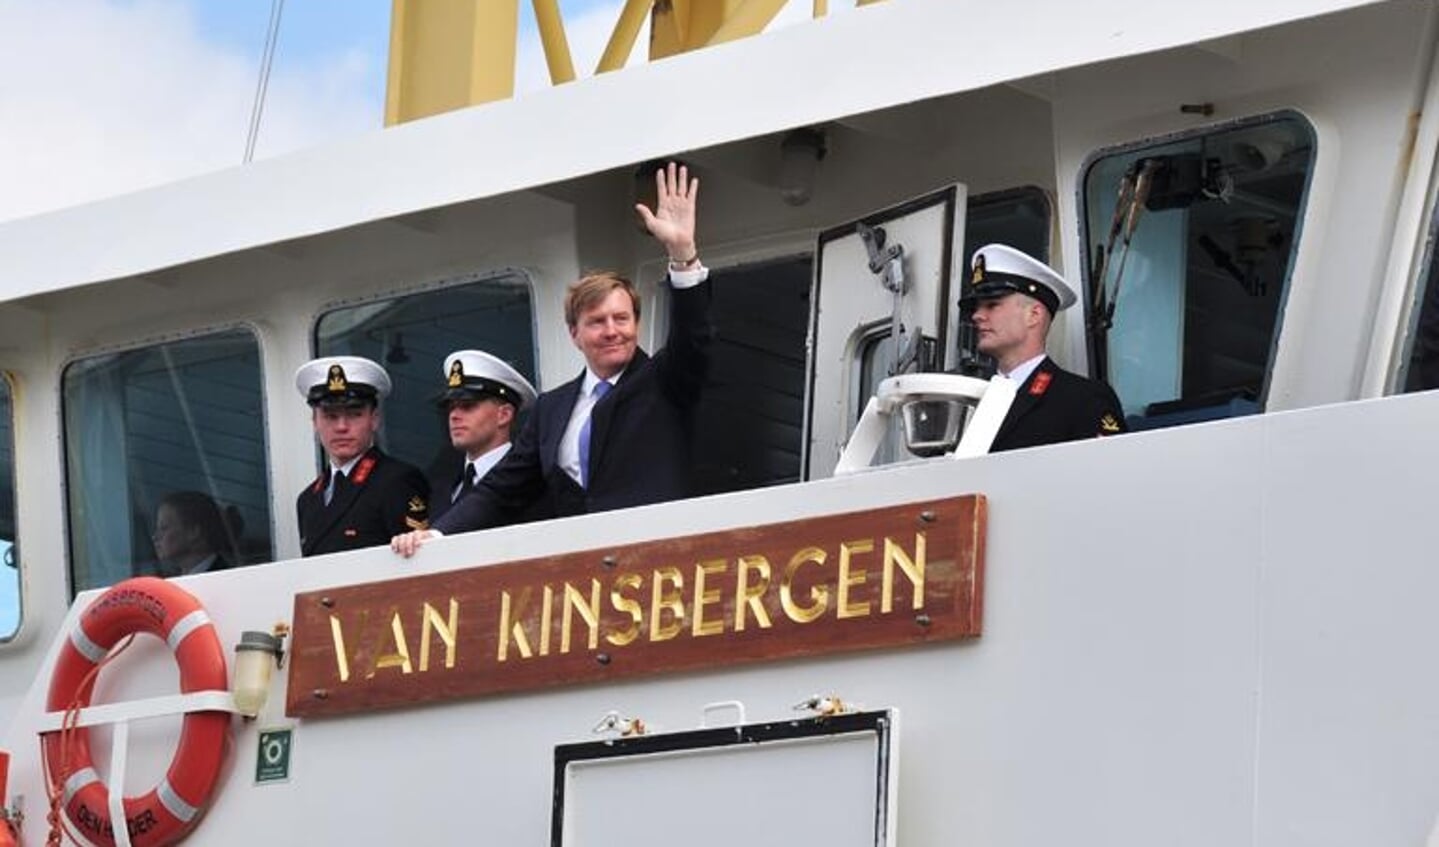 Met het marineschip Van Kinsbergen vertrok Willem Alexander weer naar het vaste land. (Foto: Alicia Saal)